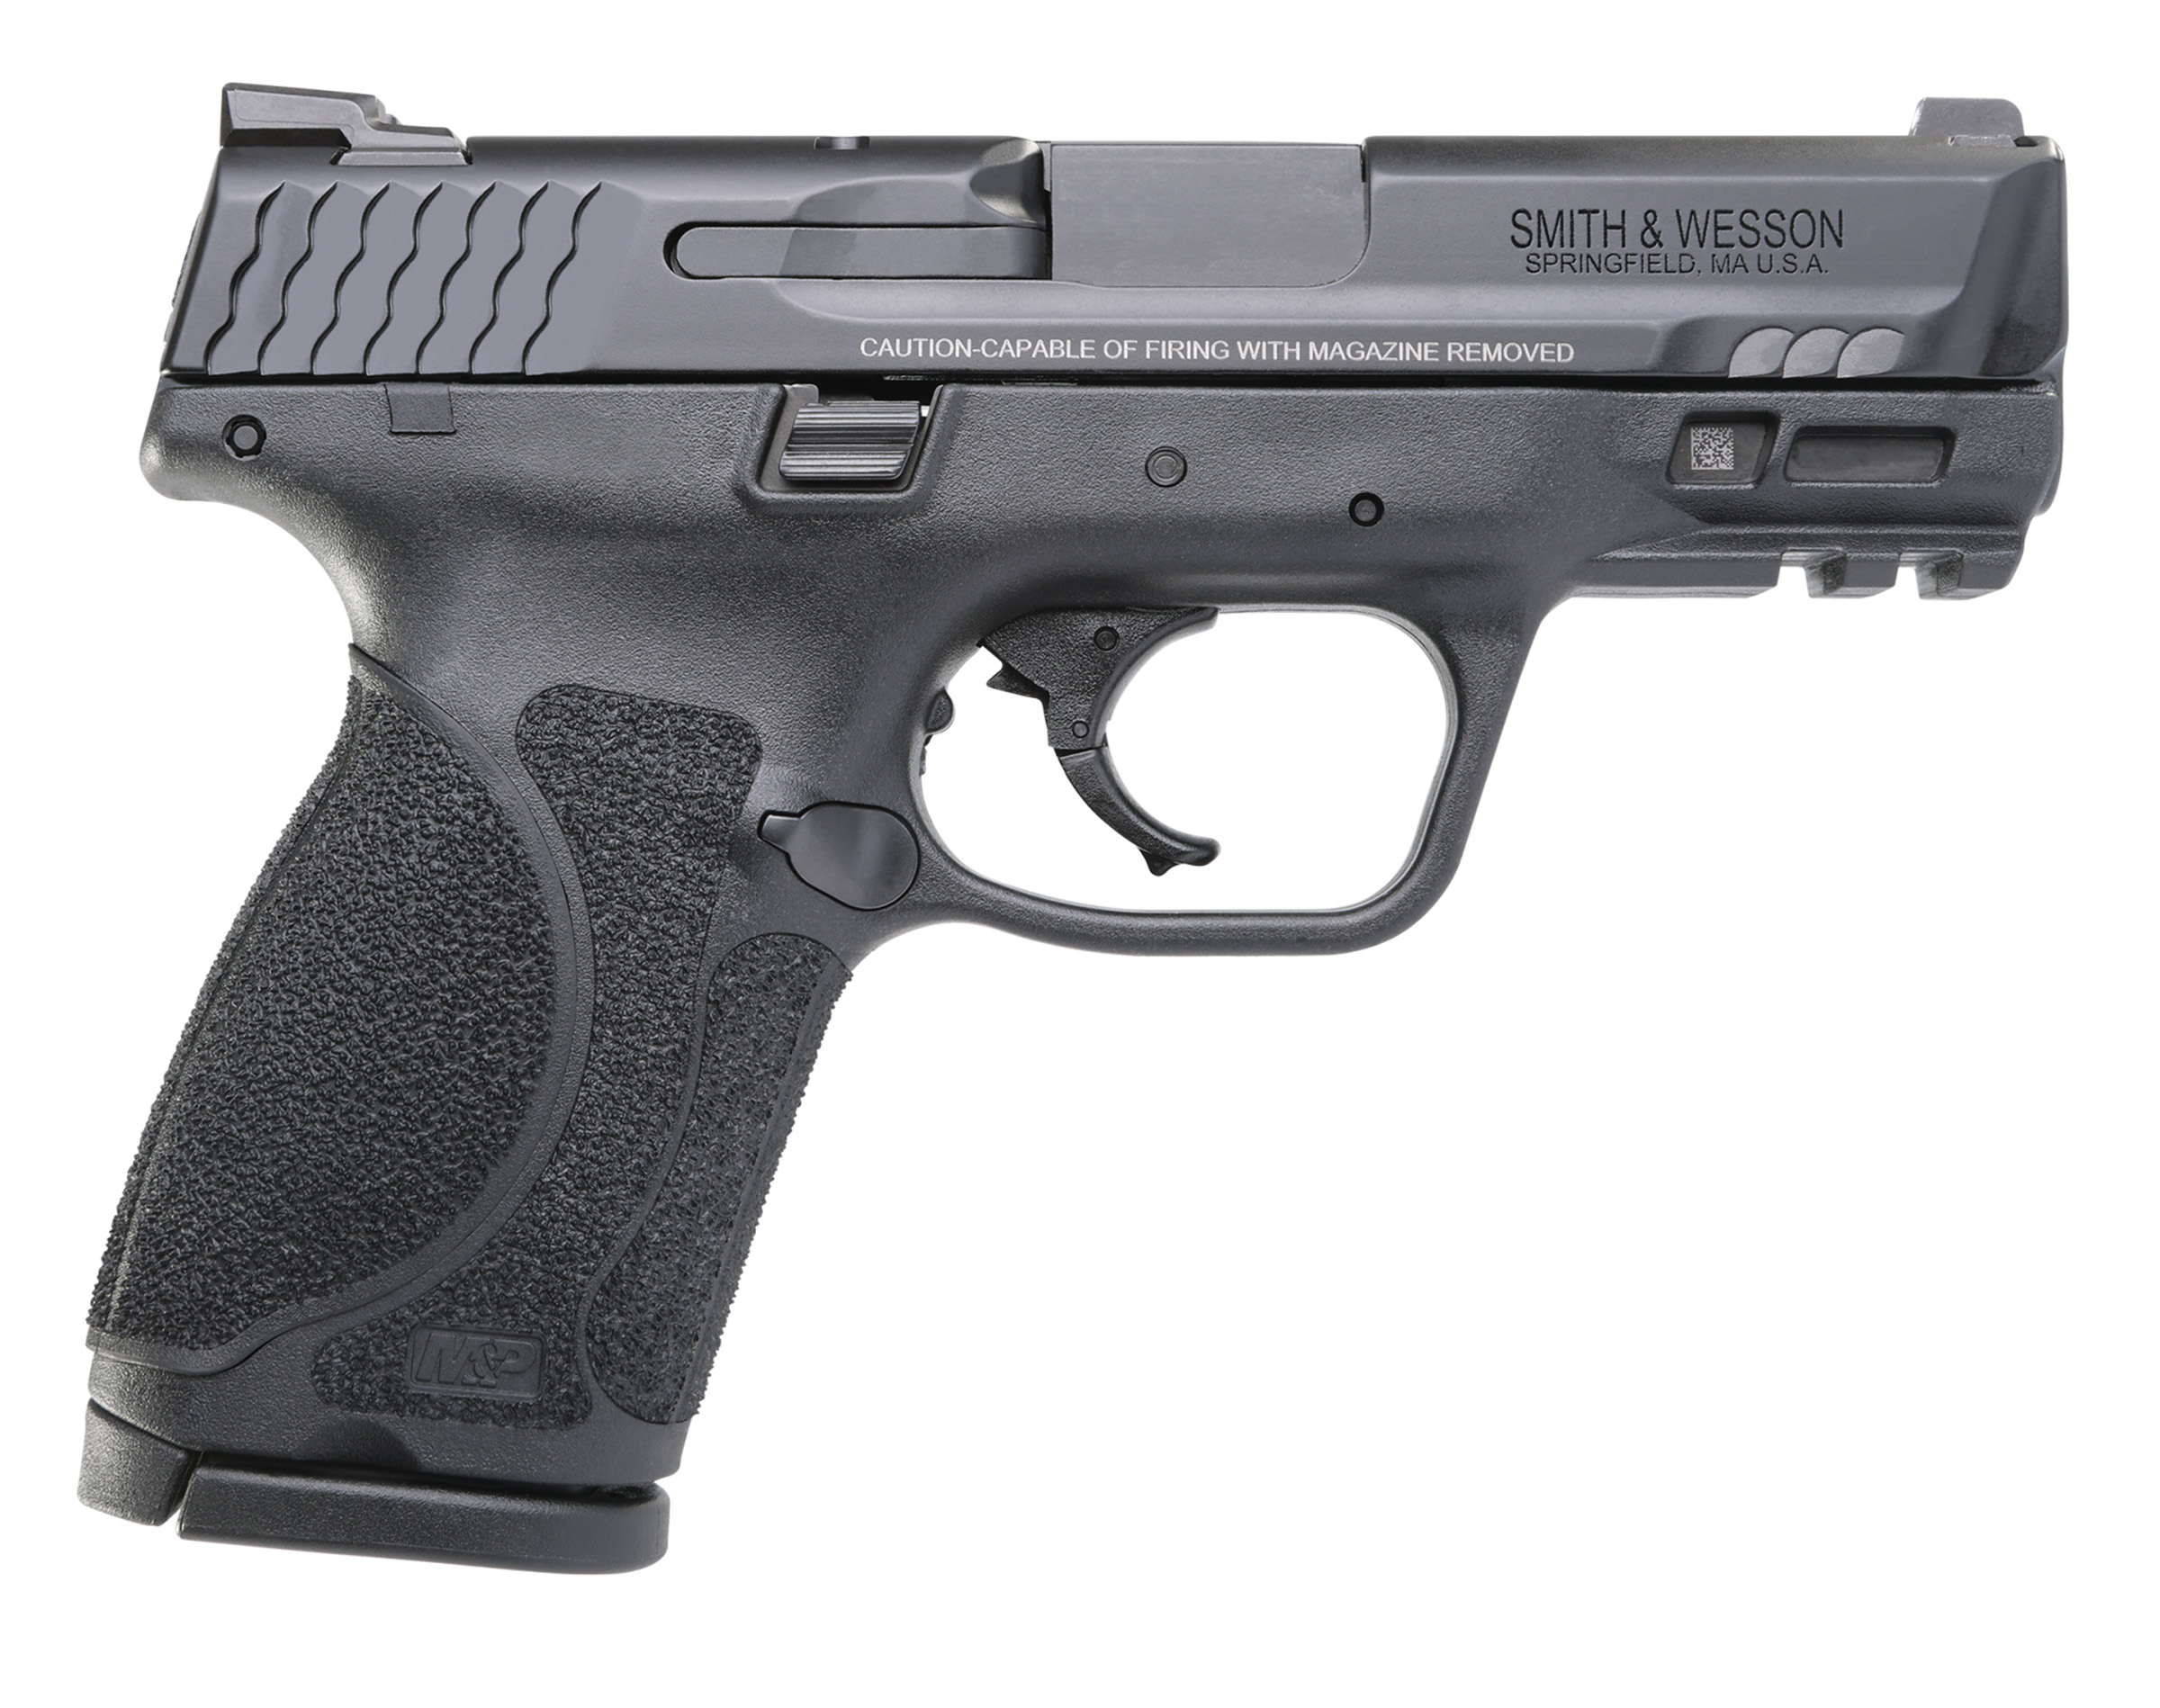 Smith & Wesson M&P M2.0 Compact Semi-Auto Pistol - 9mm - 3.6"" - 10+1 - MA Compliant